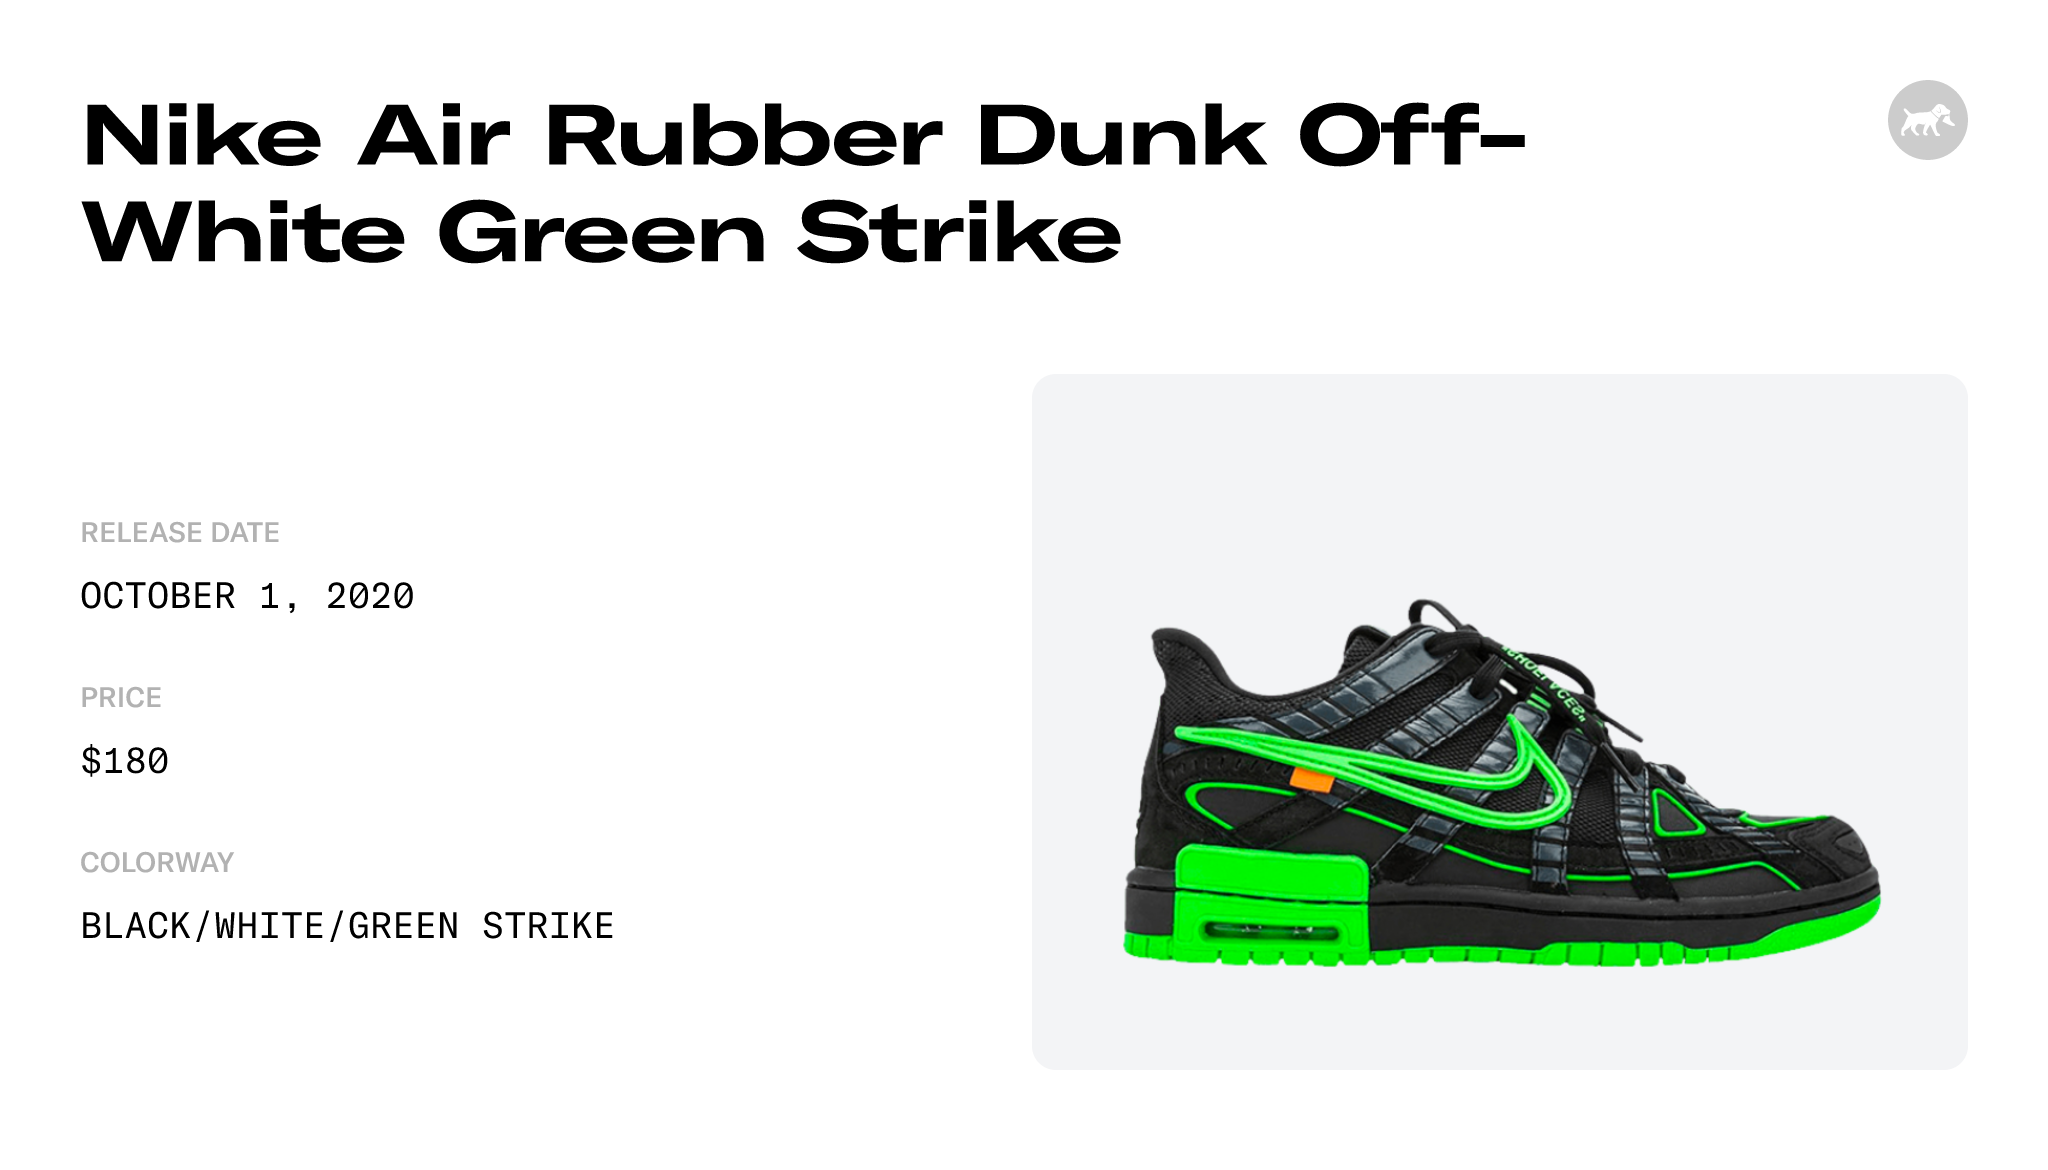 Off-White Nike Rubber Dunk CU6015-001 Release Info